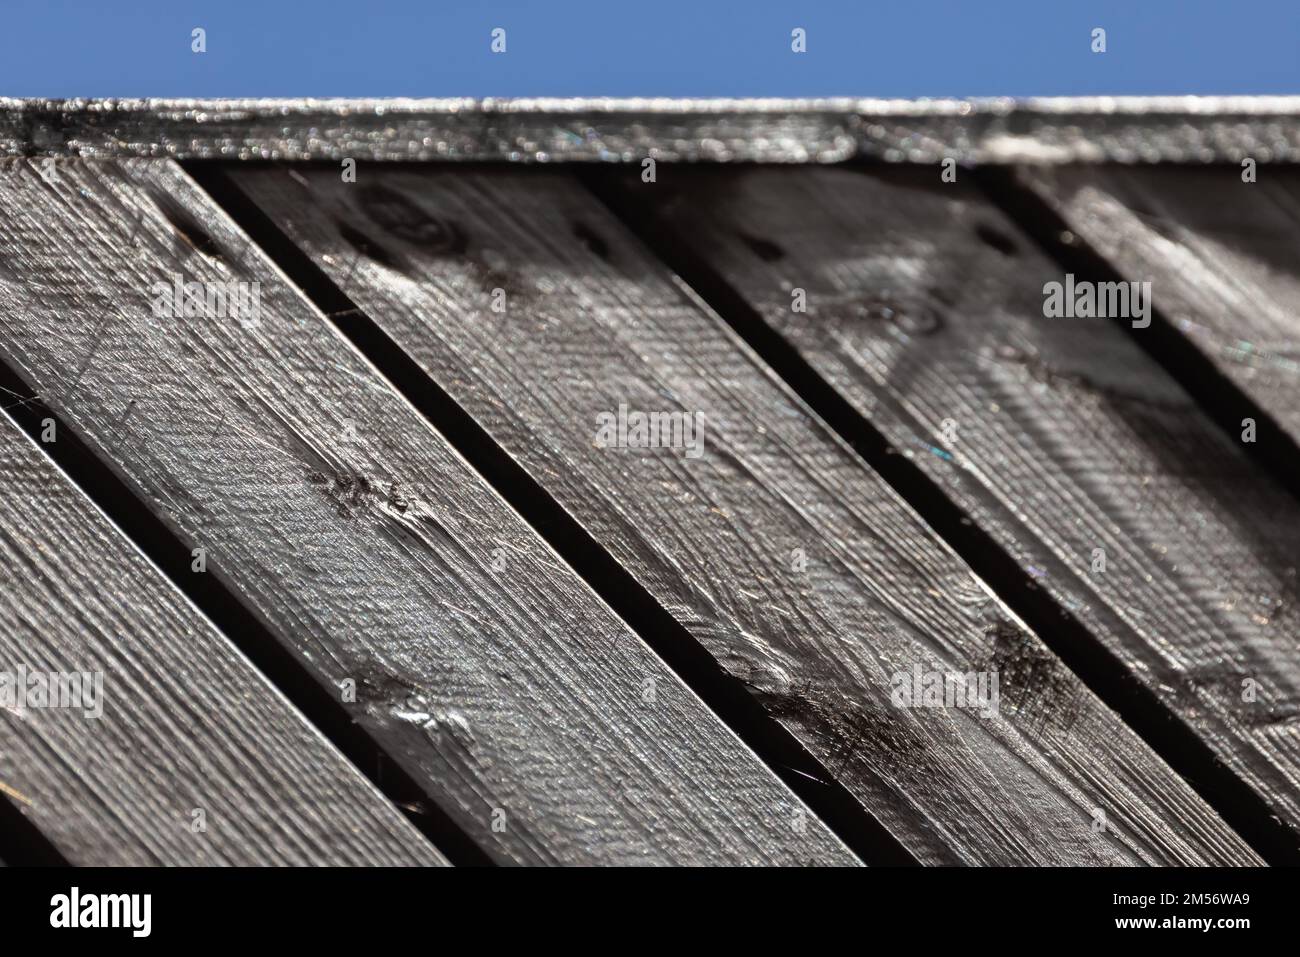 Détails abstraits de l'architecture en bois, surface intérieure du toit sous ciel bleu, photo d'arrière-plan avec mise au point sélective Banque D'Images